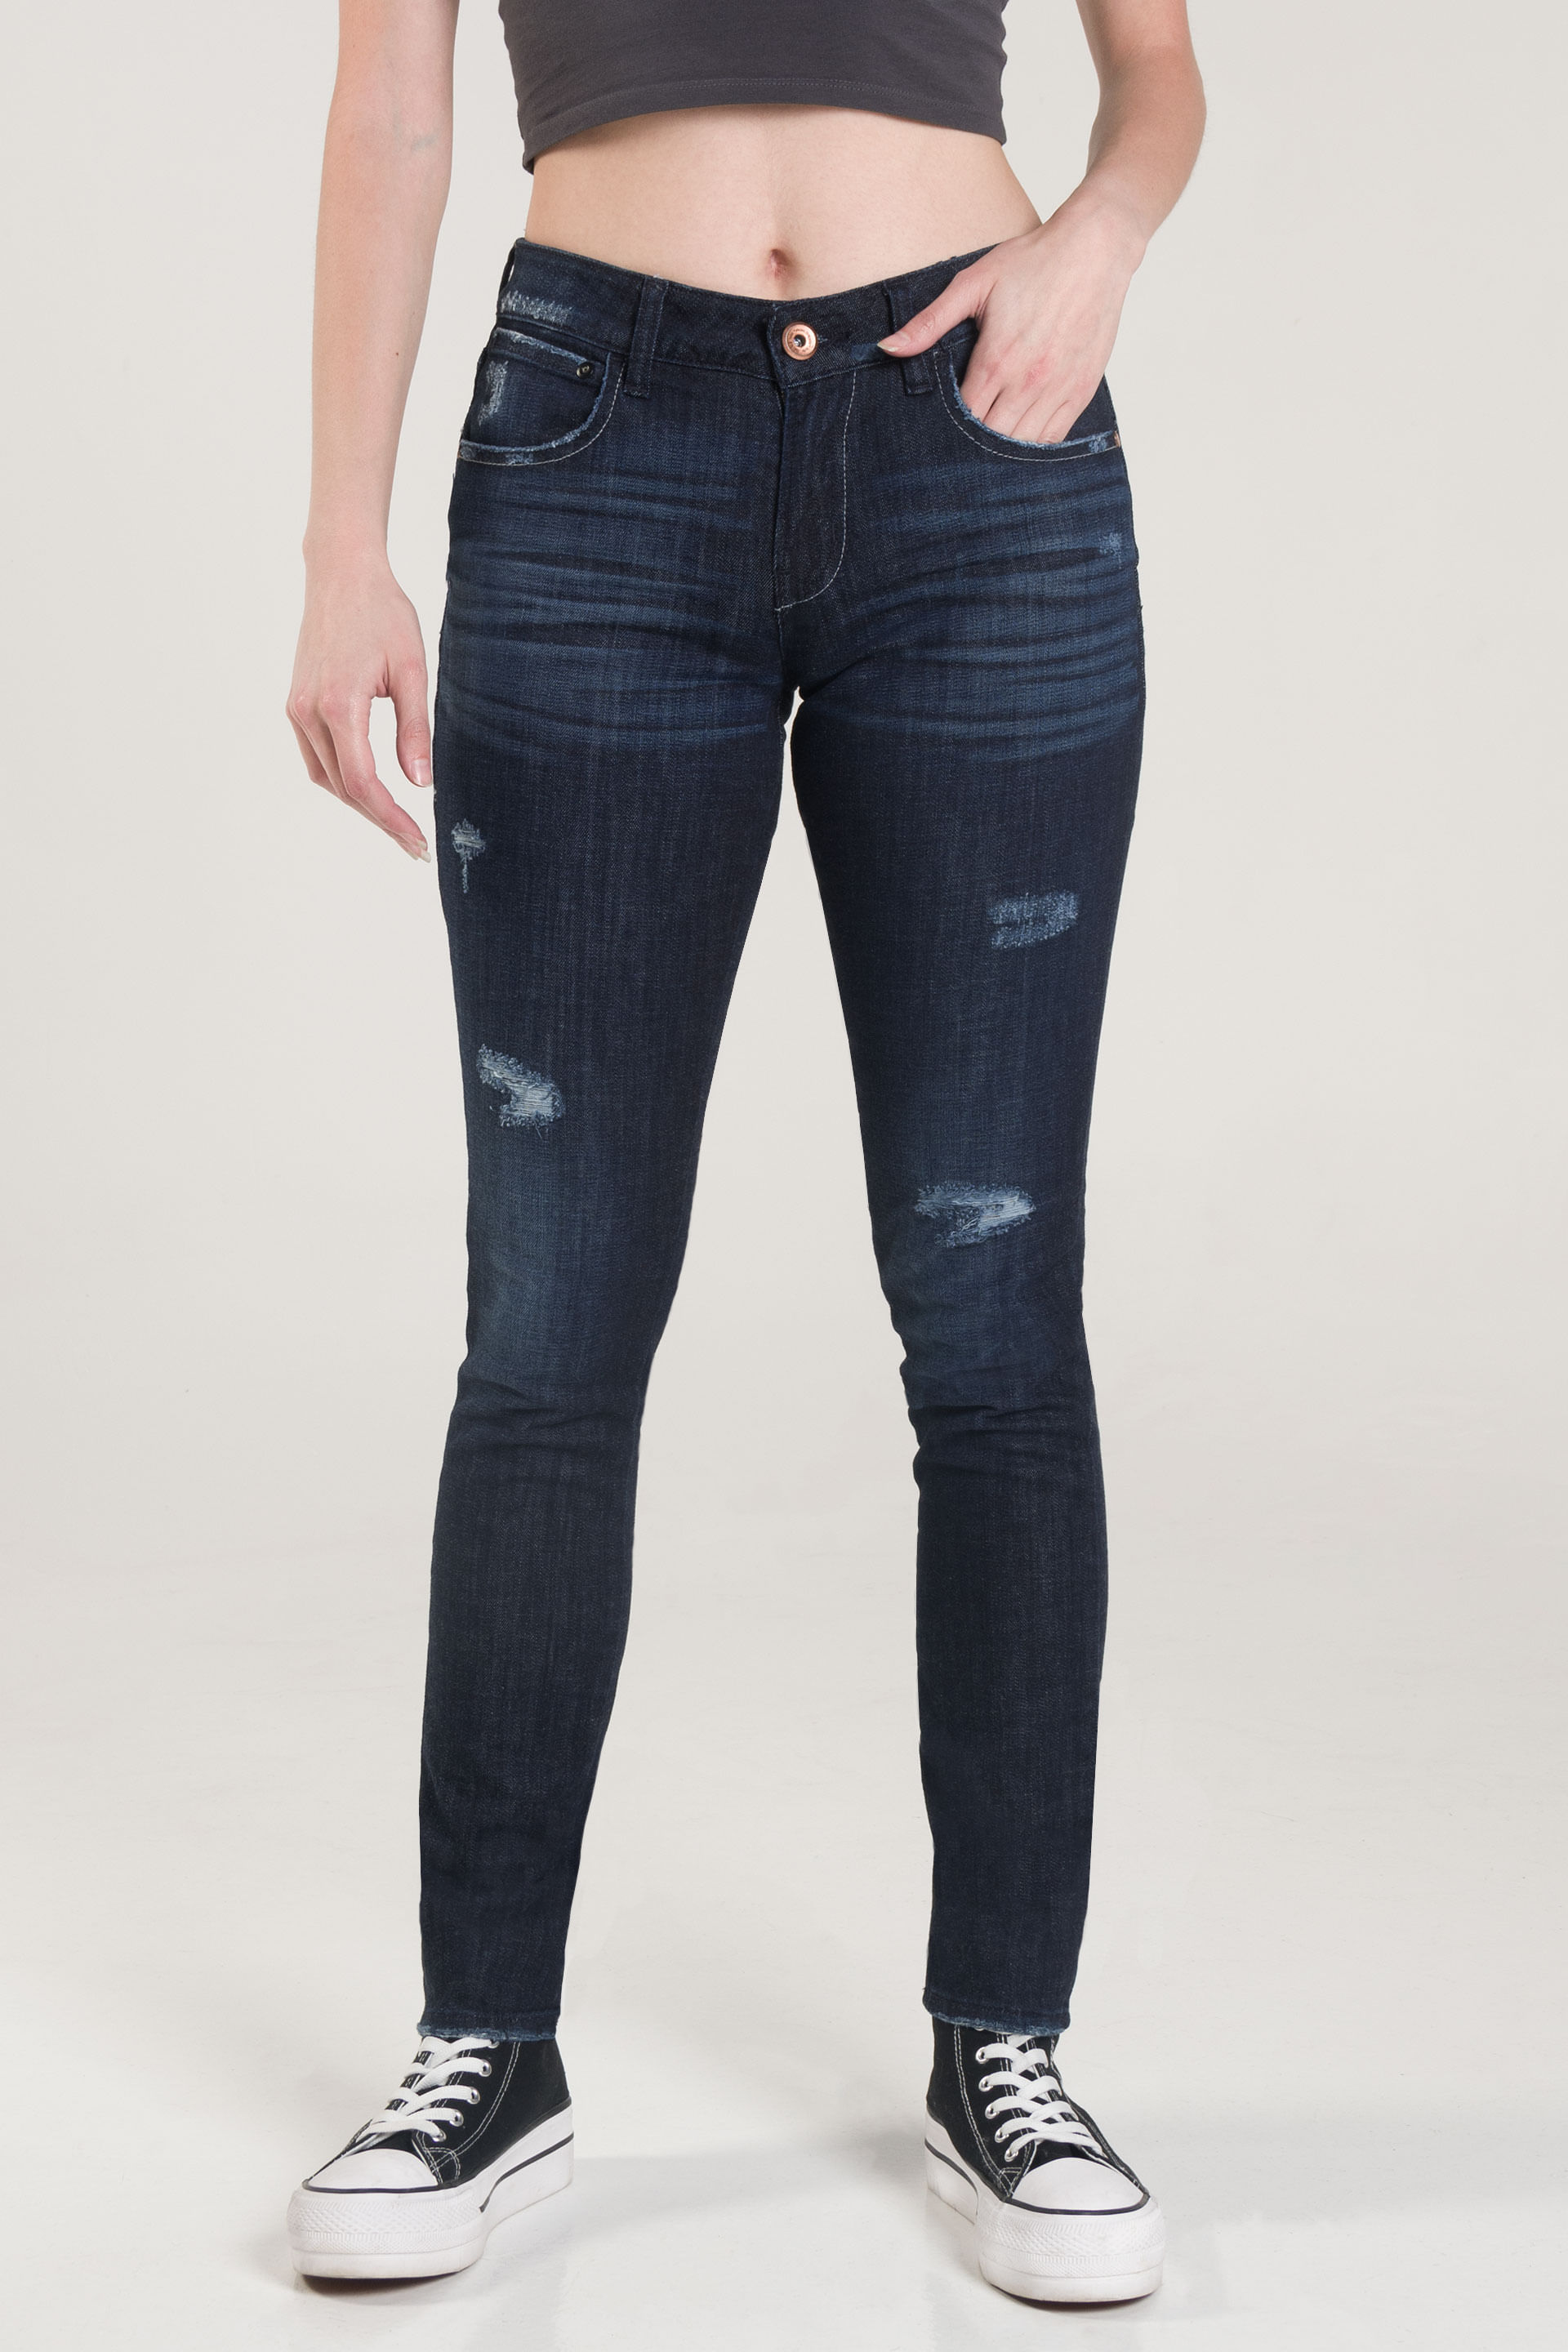 Pantalon Oggi Jeans De Mezclilla Para Mujer Dolly X01942119